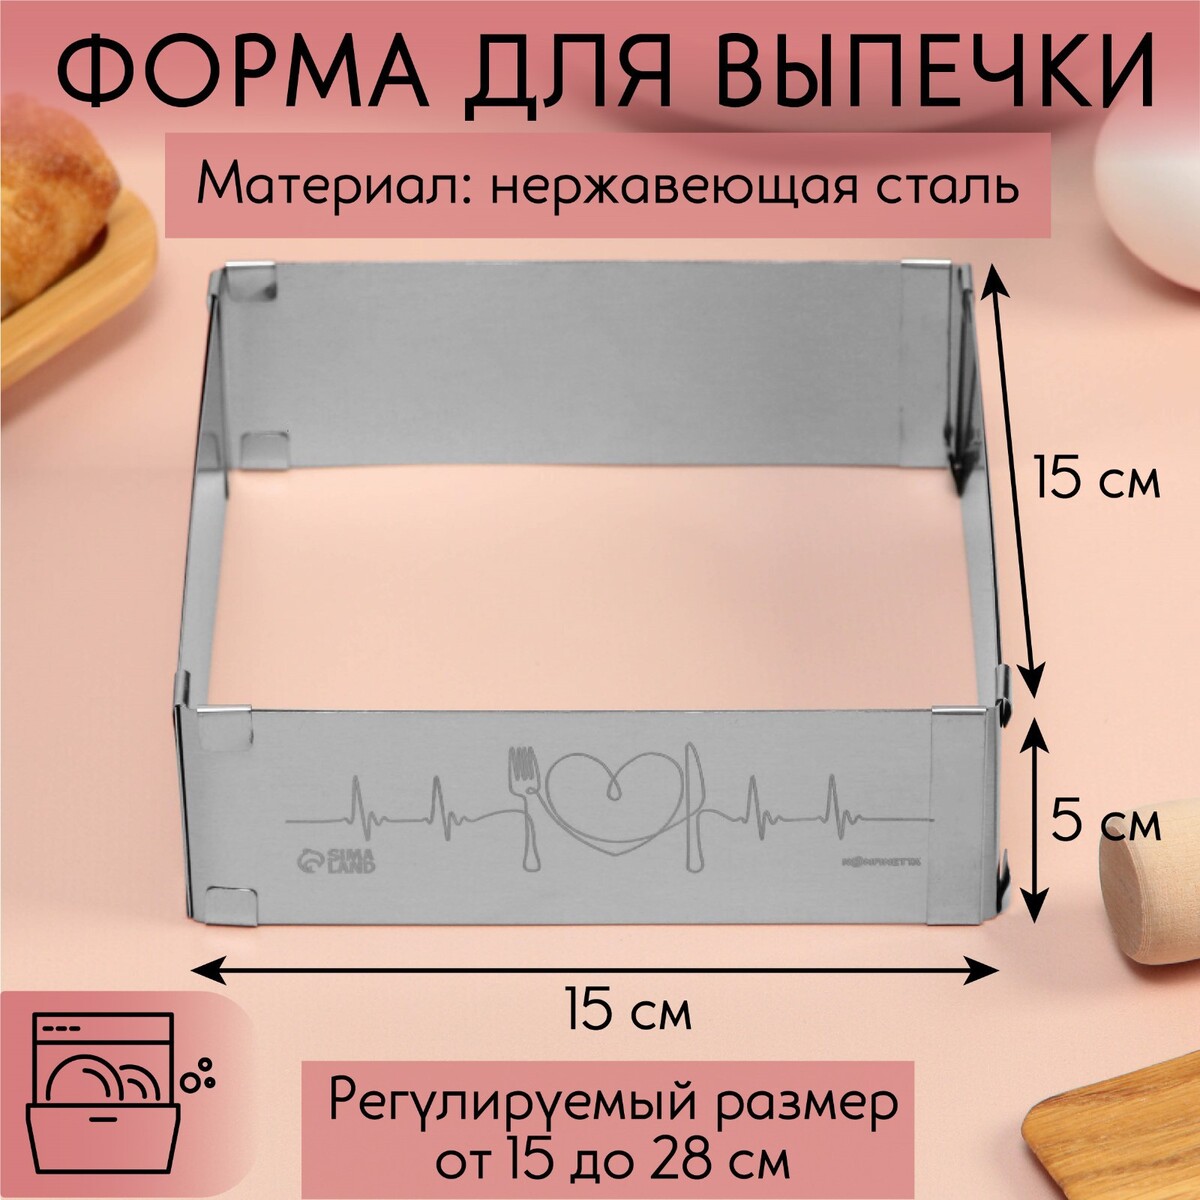 Форма для выпечки прямоугольная с регулировкой размера love, h-5 см, 15x15 - 28x28 см форма для запекания стекло 17х22х6 см 1 5 л прямоугольная с крышкой pyrex cook freez 242p000